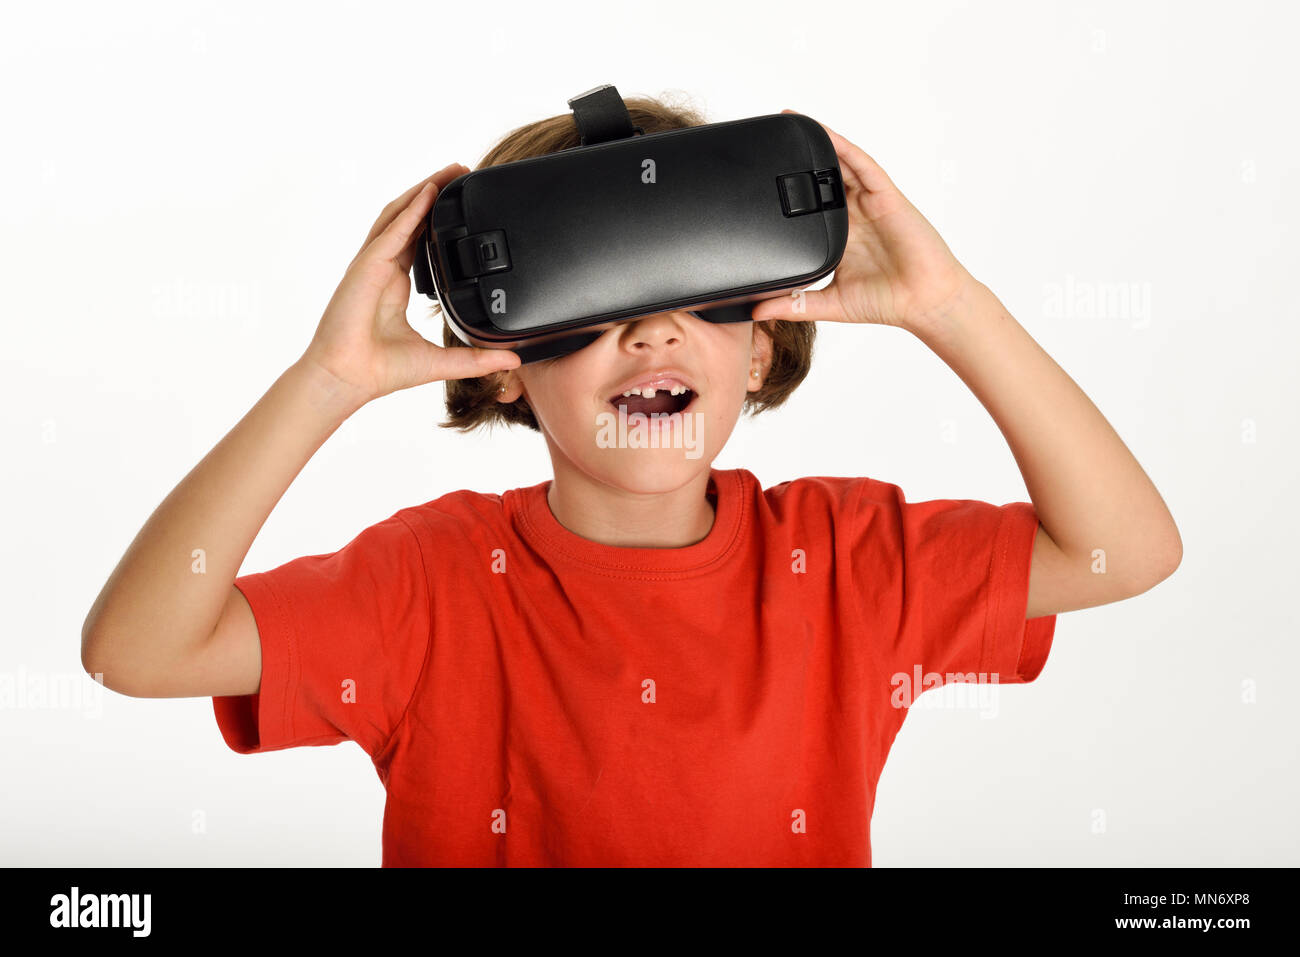 Kleines Mädchen suchen im VR-Brille und gestikulierte wild mit seinen Händen. Fröhliche überrascht Kind tragen virtual reality goggles Filme anschauen oder Videospiele spielen, auf weißem Hintergrund. Stockfoto